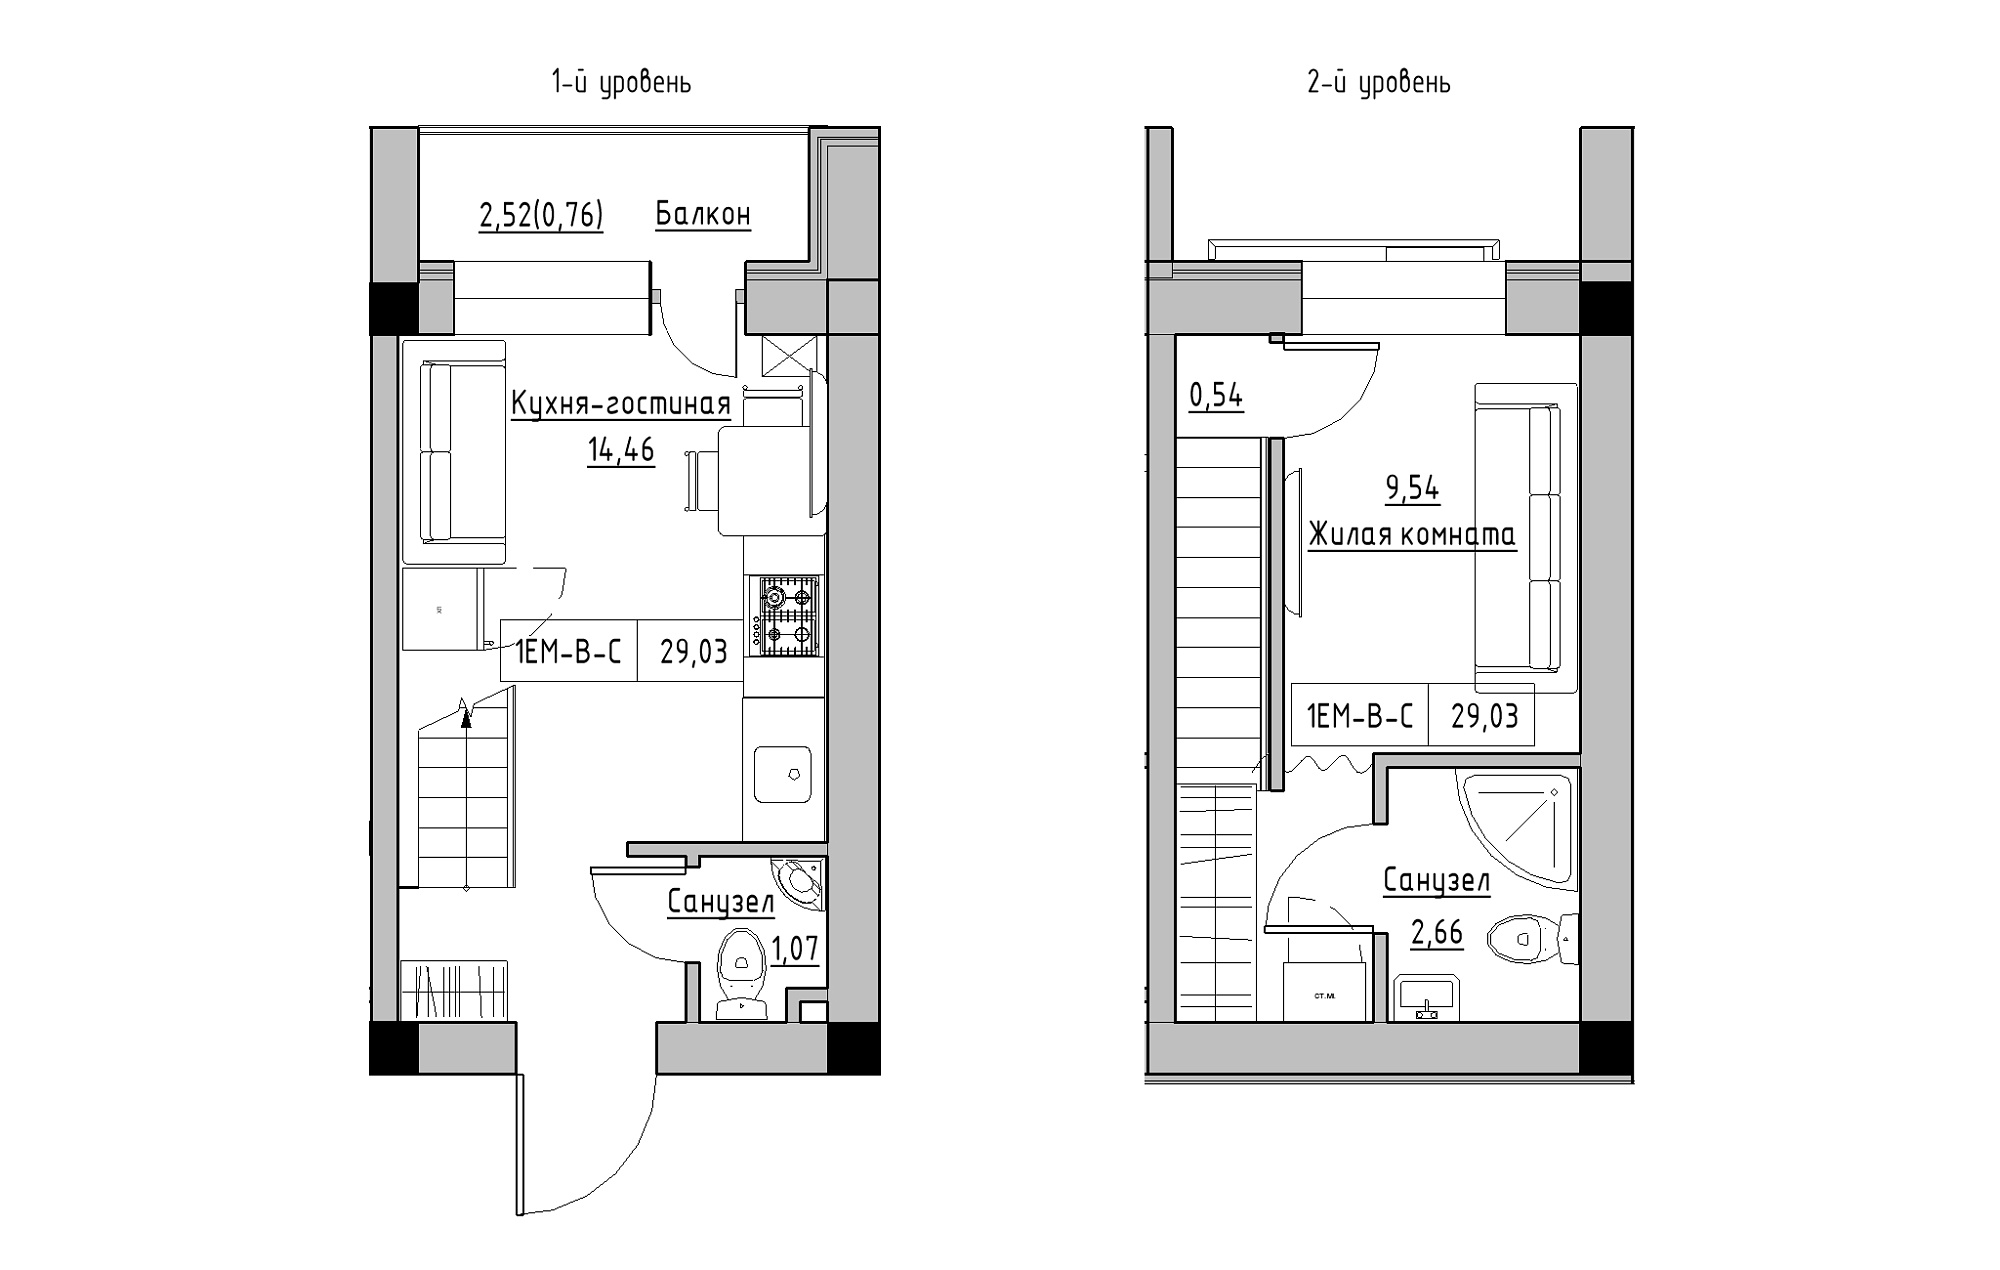 Planning 2-lvl flats area 29.03m2, KS-018-05/0006.